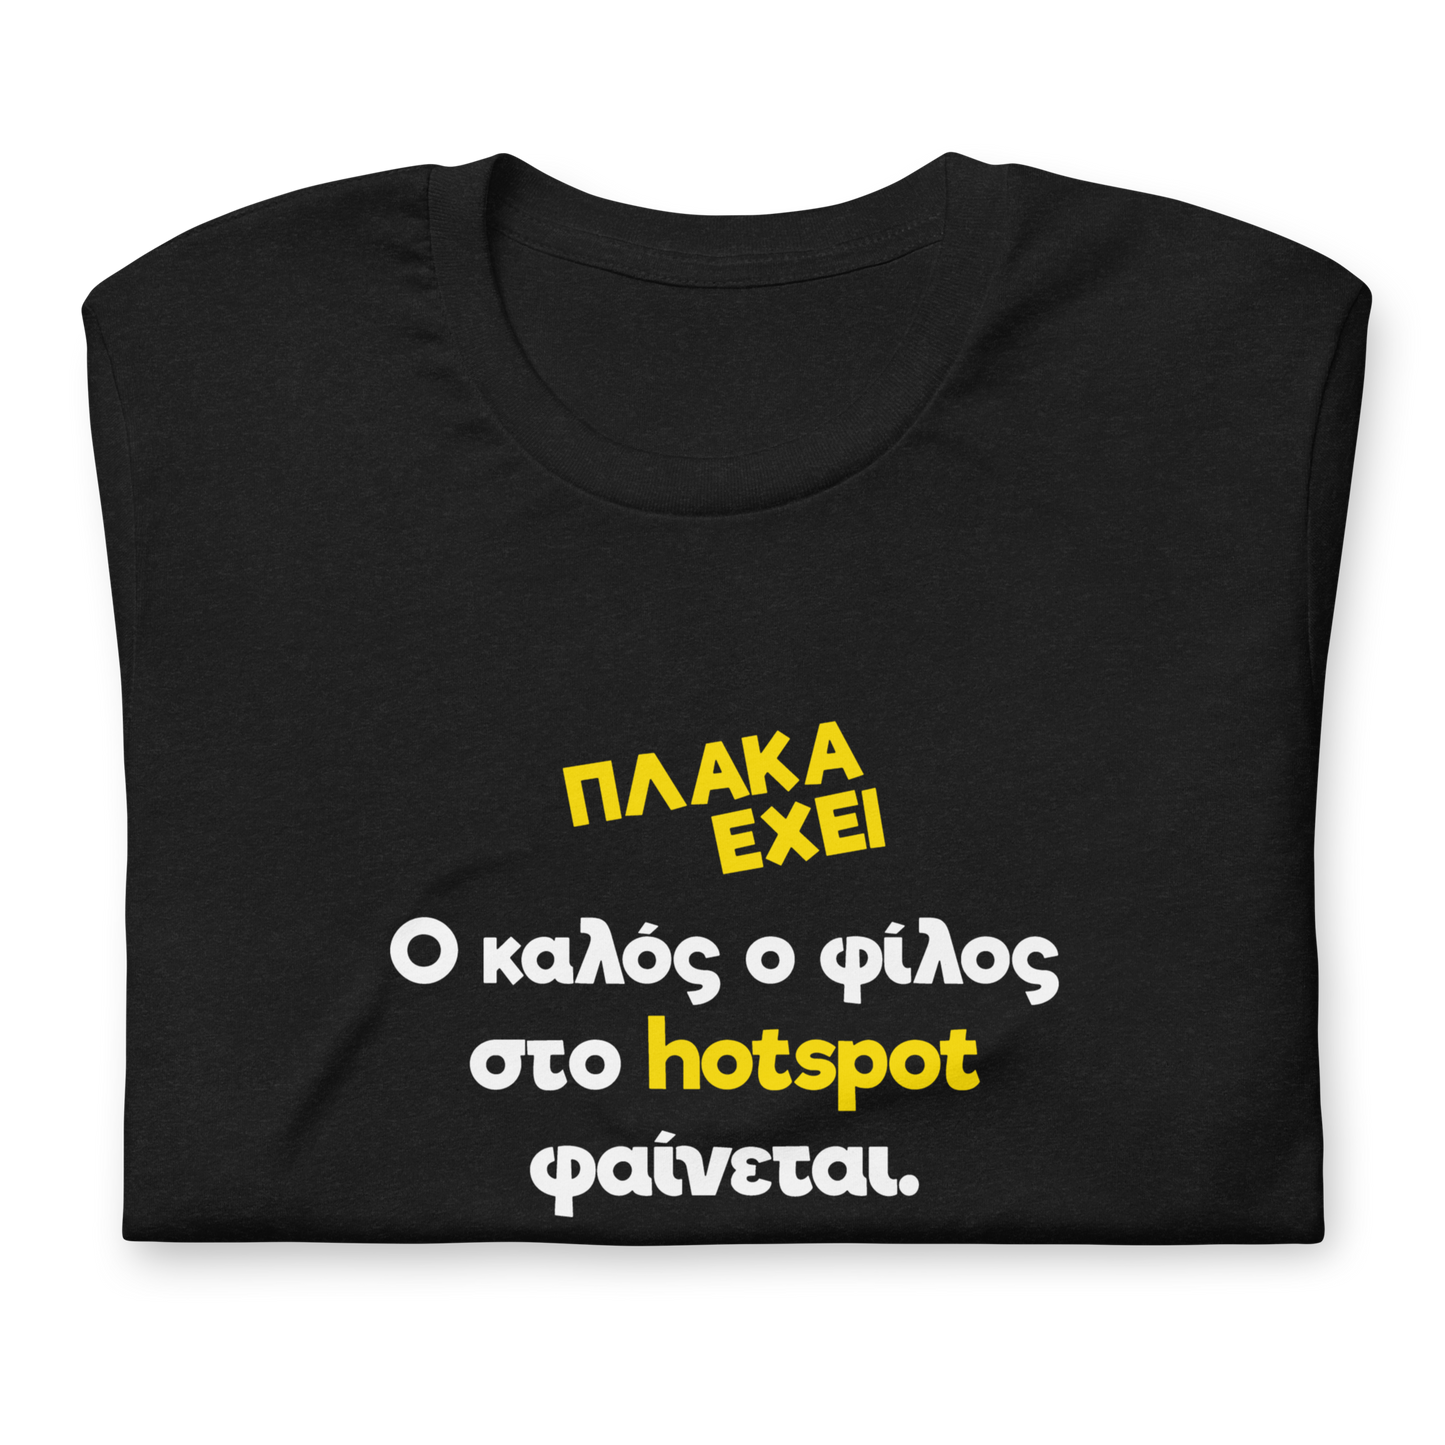 Hotspot t-shirt